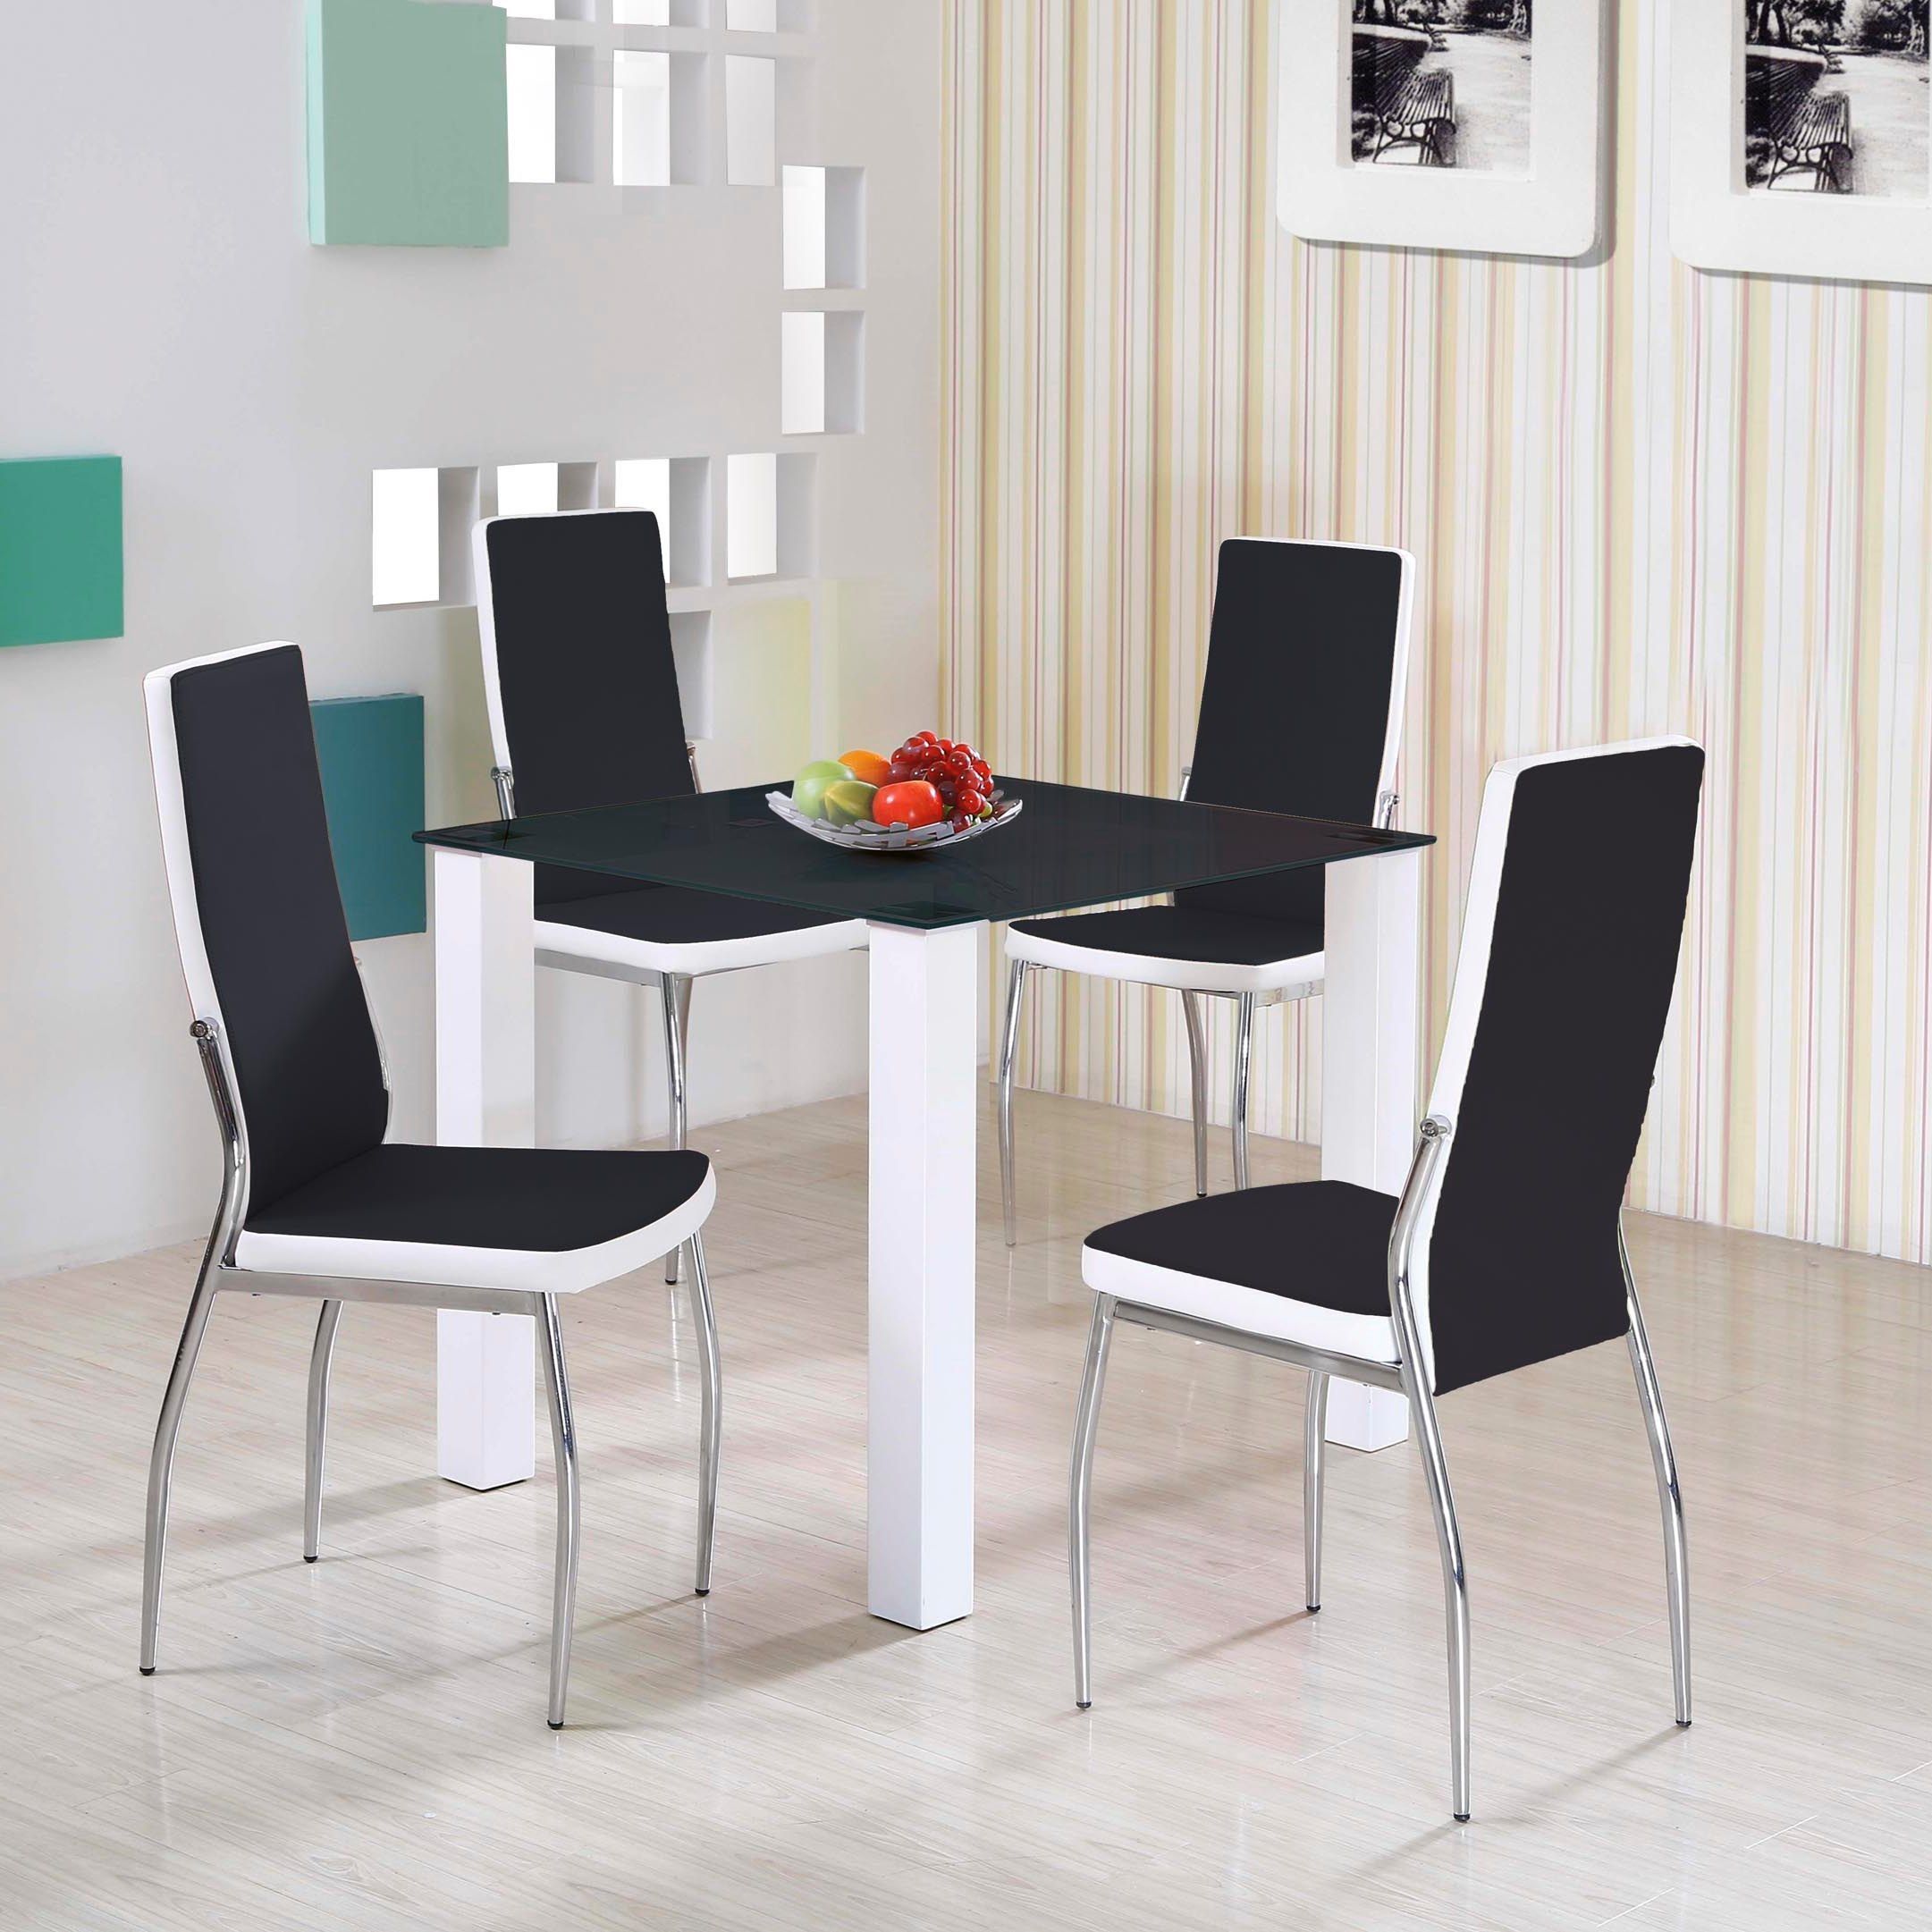 стол и стулья для черно белой кухни